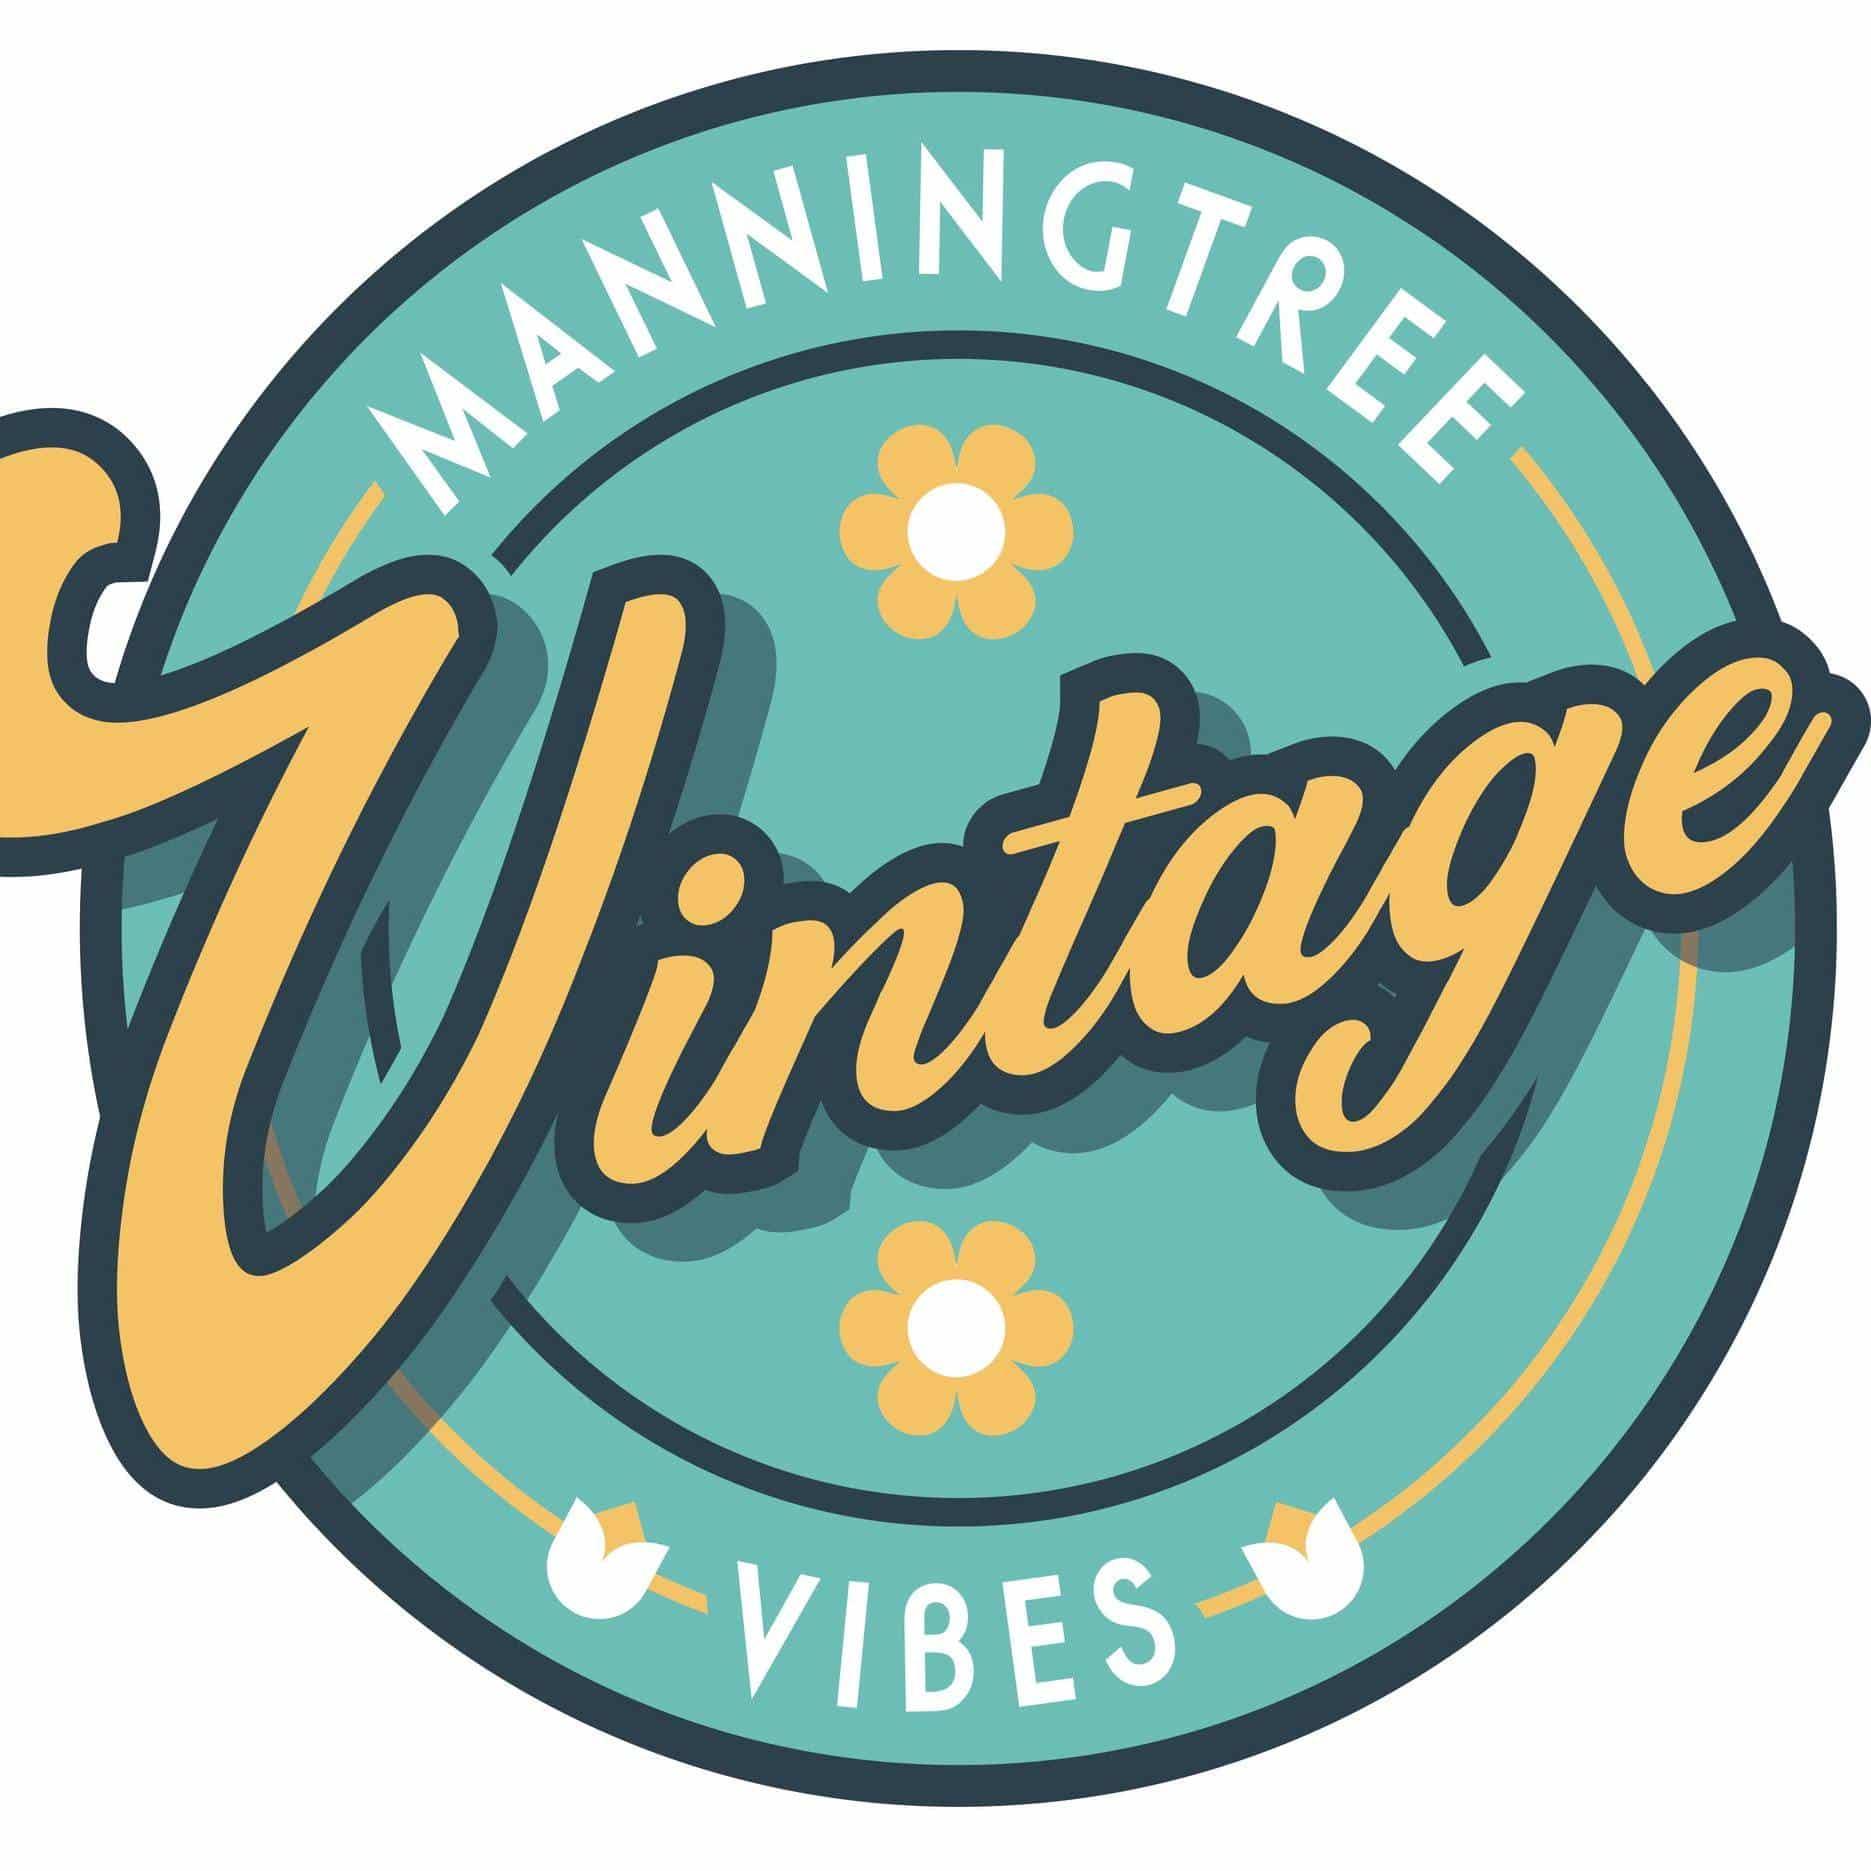 Manningtree Vintage Vibes - Dress to Impress